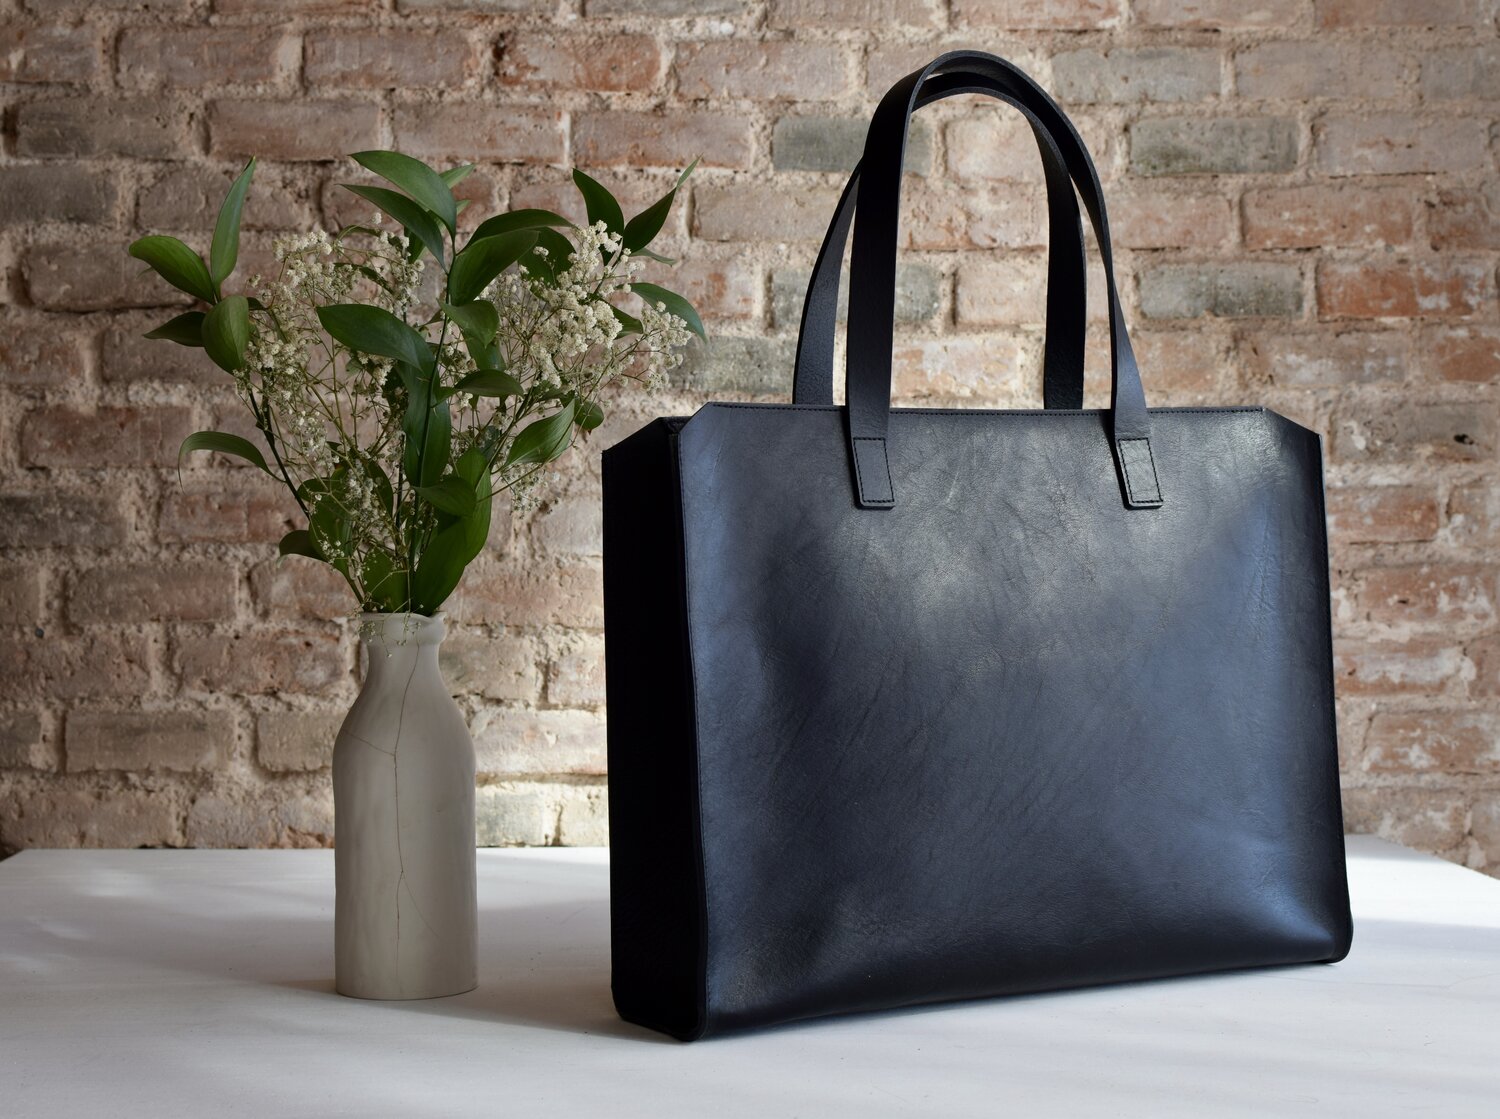 www. - Genuine Leather Shoulder Bag*